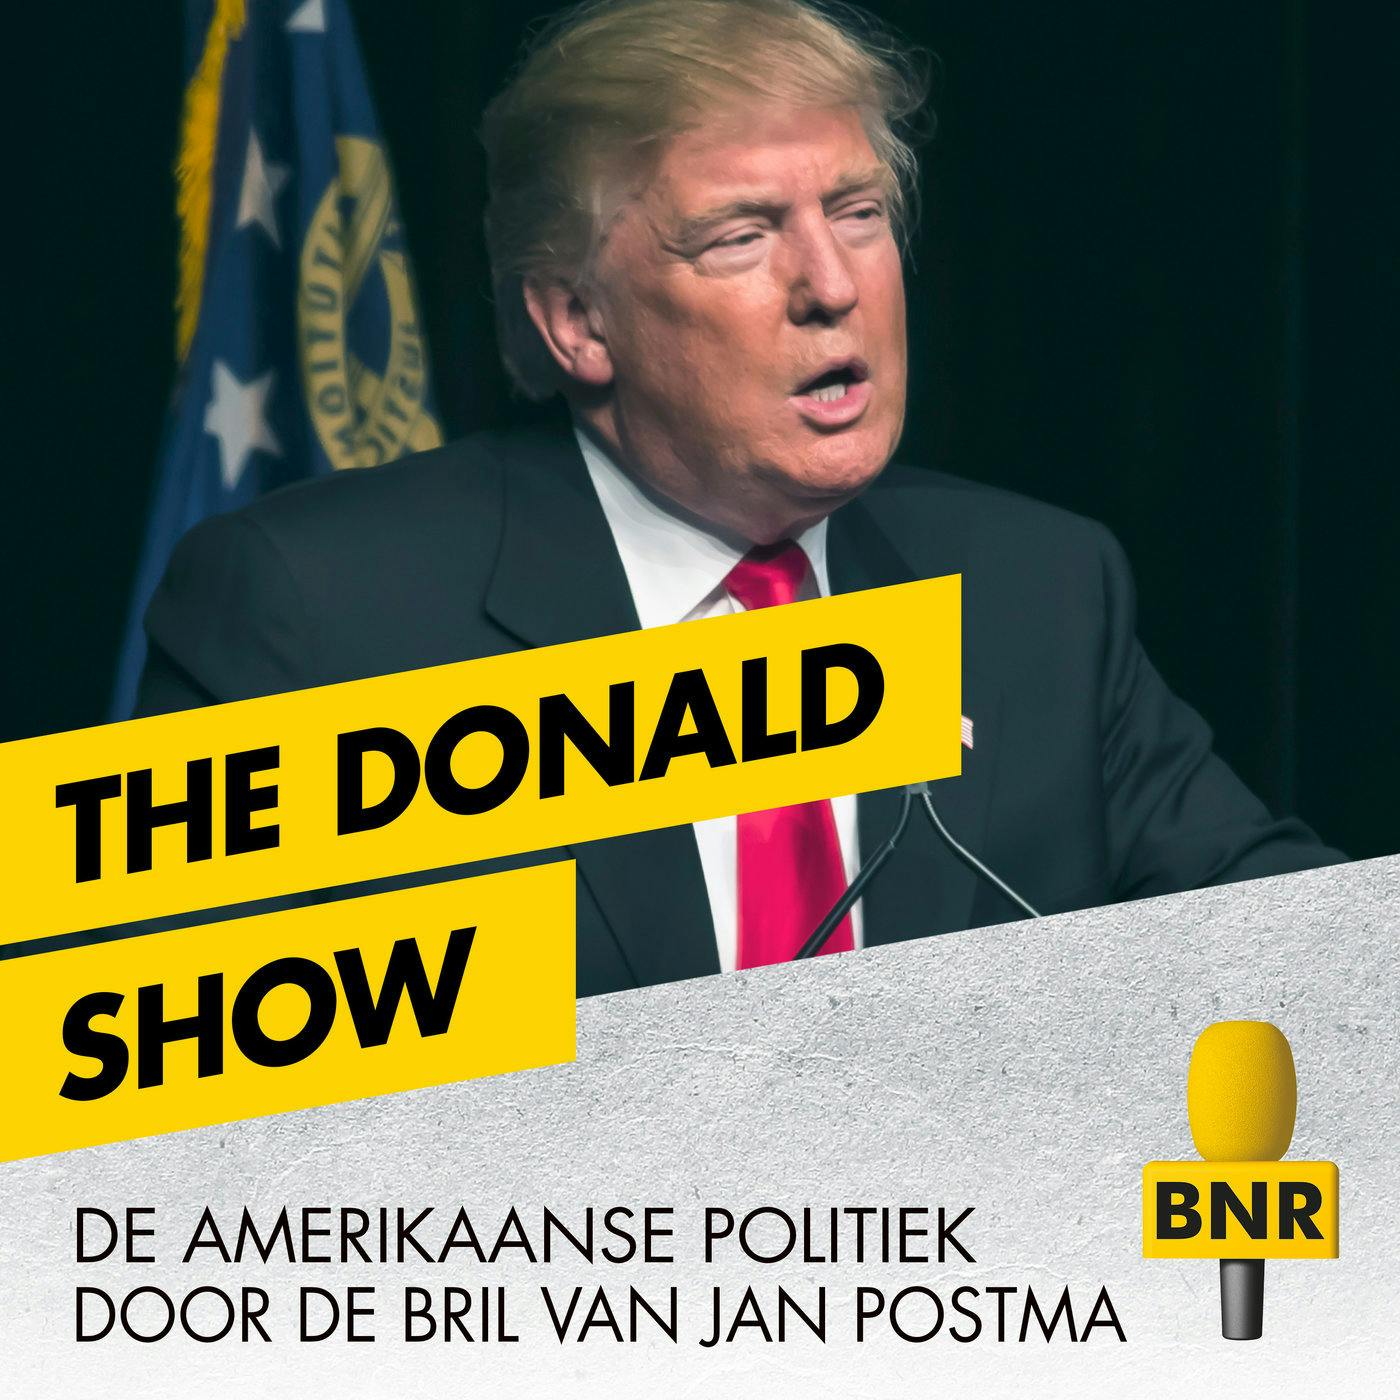 The Donald Show: mag er iemand voor of tegen Trump getuigen? 